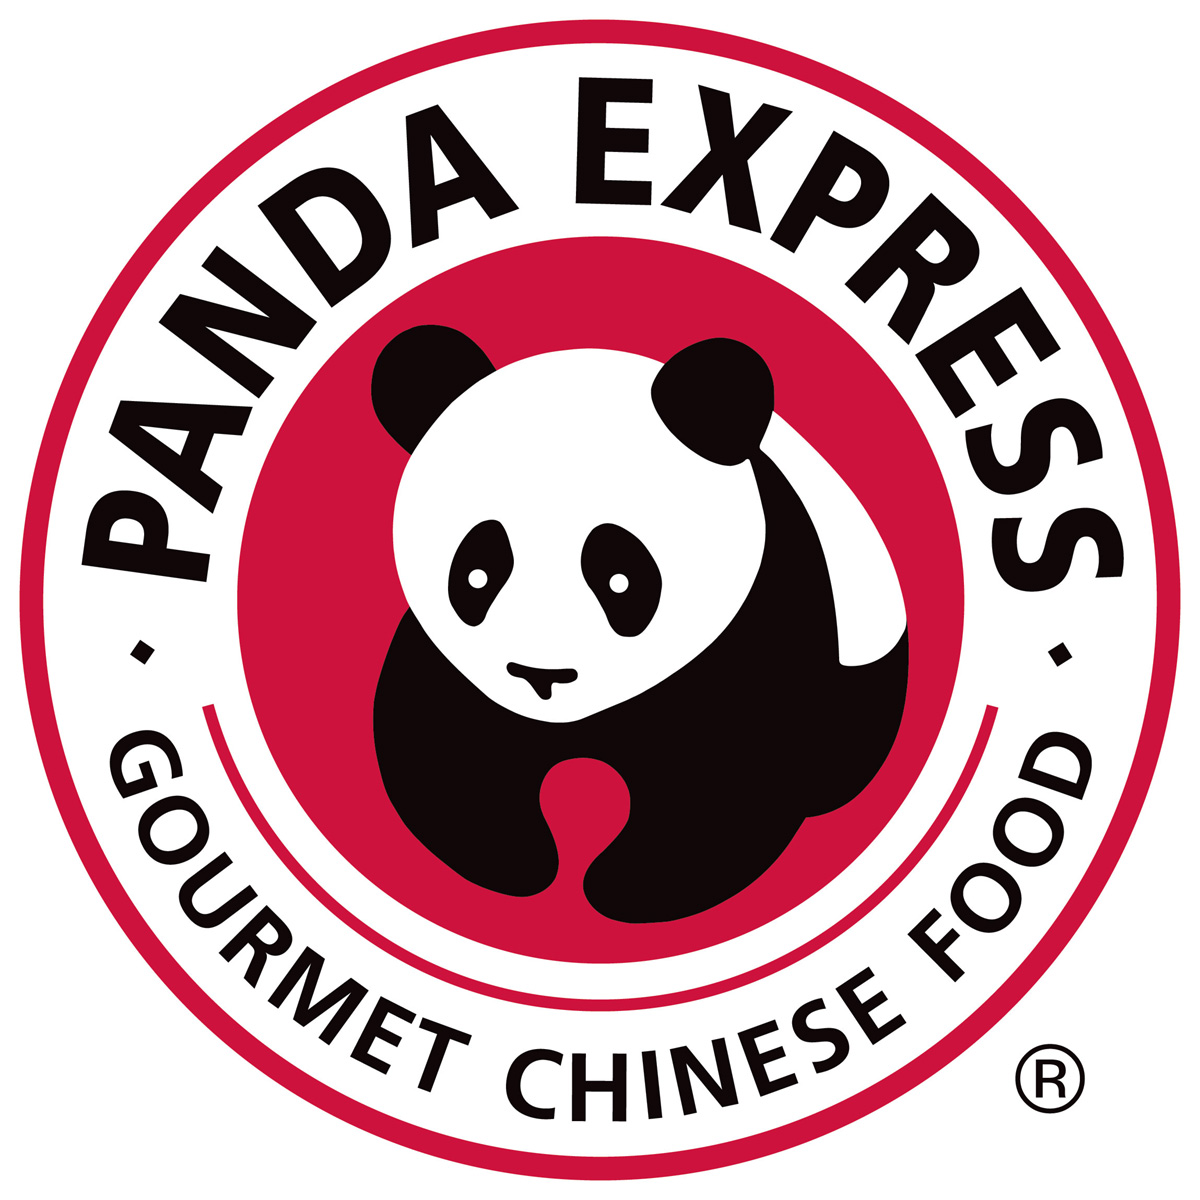 Panda Express パンダエクスプレス ロゴマーク Logomark Mania 世界のかわいいロゴマーク集 企業ロゴ ブランドロゴ